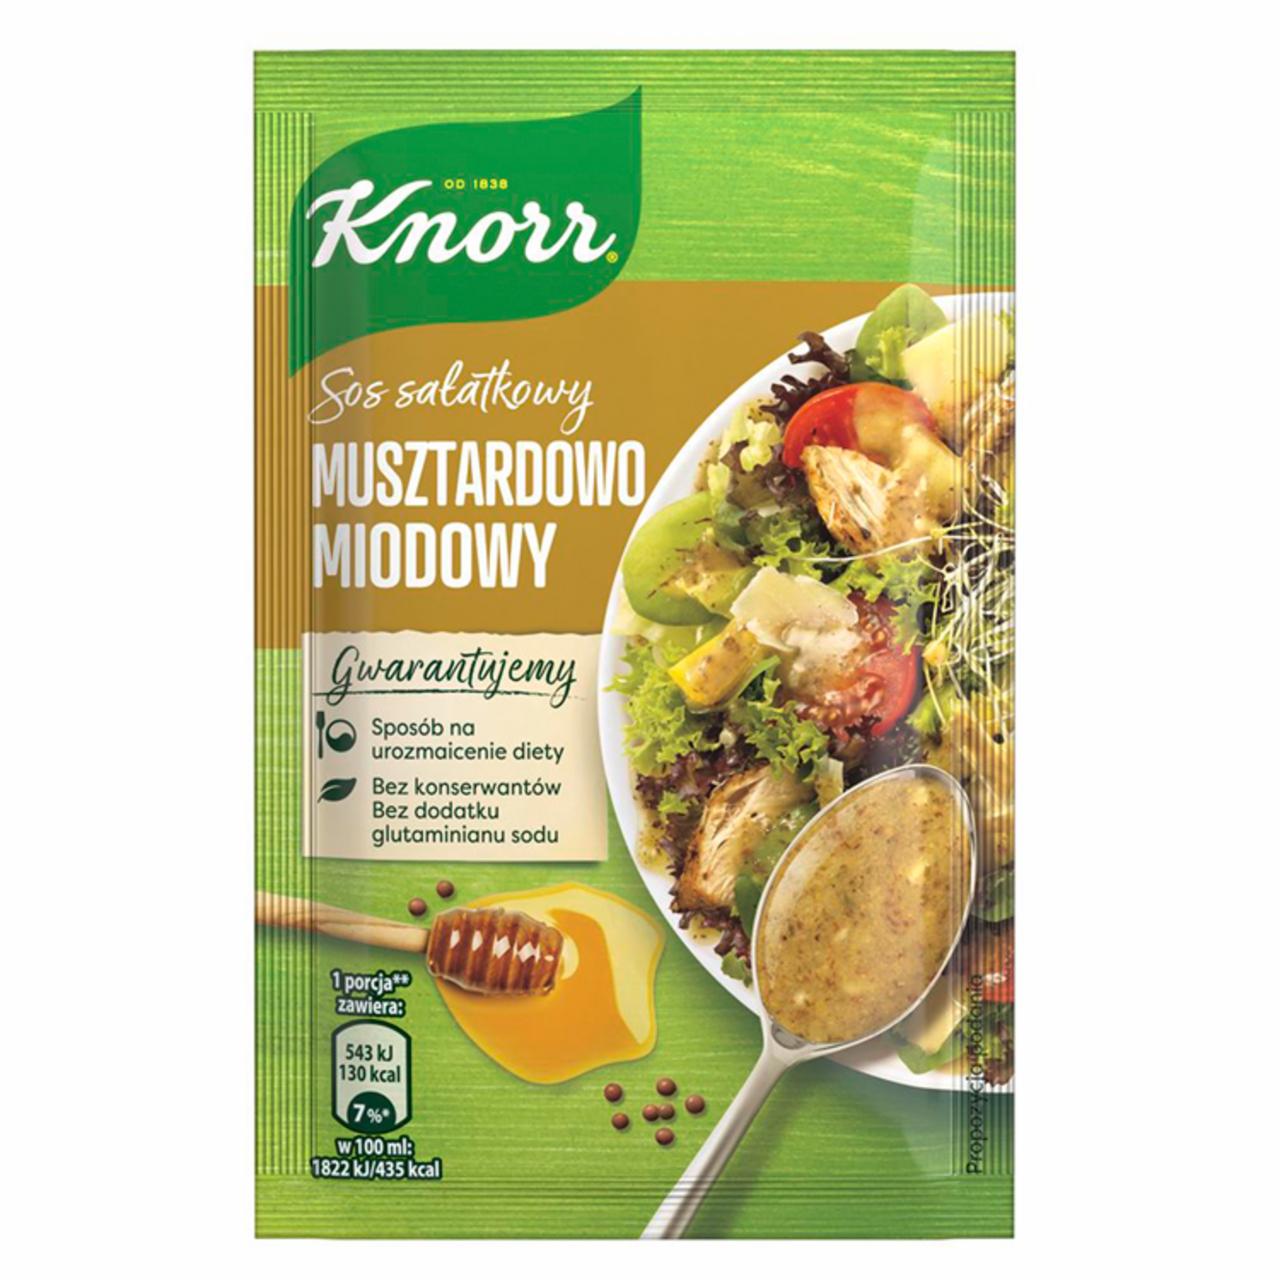 Zdjęcia - Knorr Sos sałatkowy musztardowo miodowy 8 g